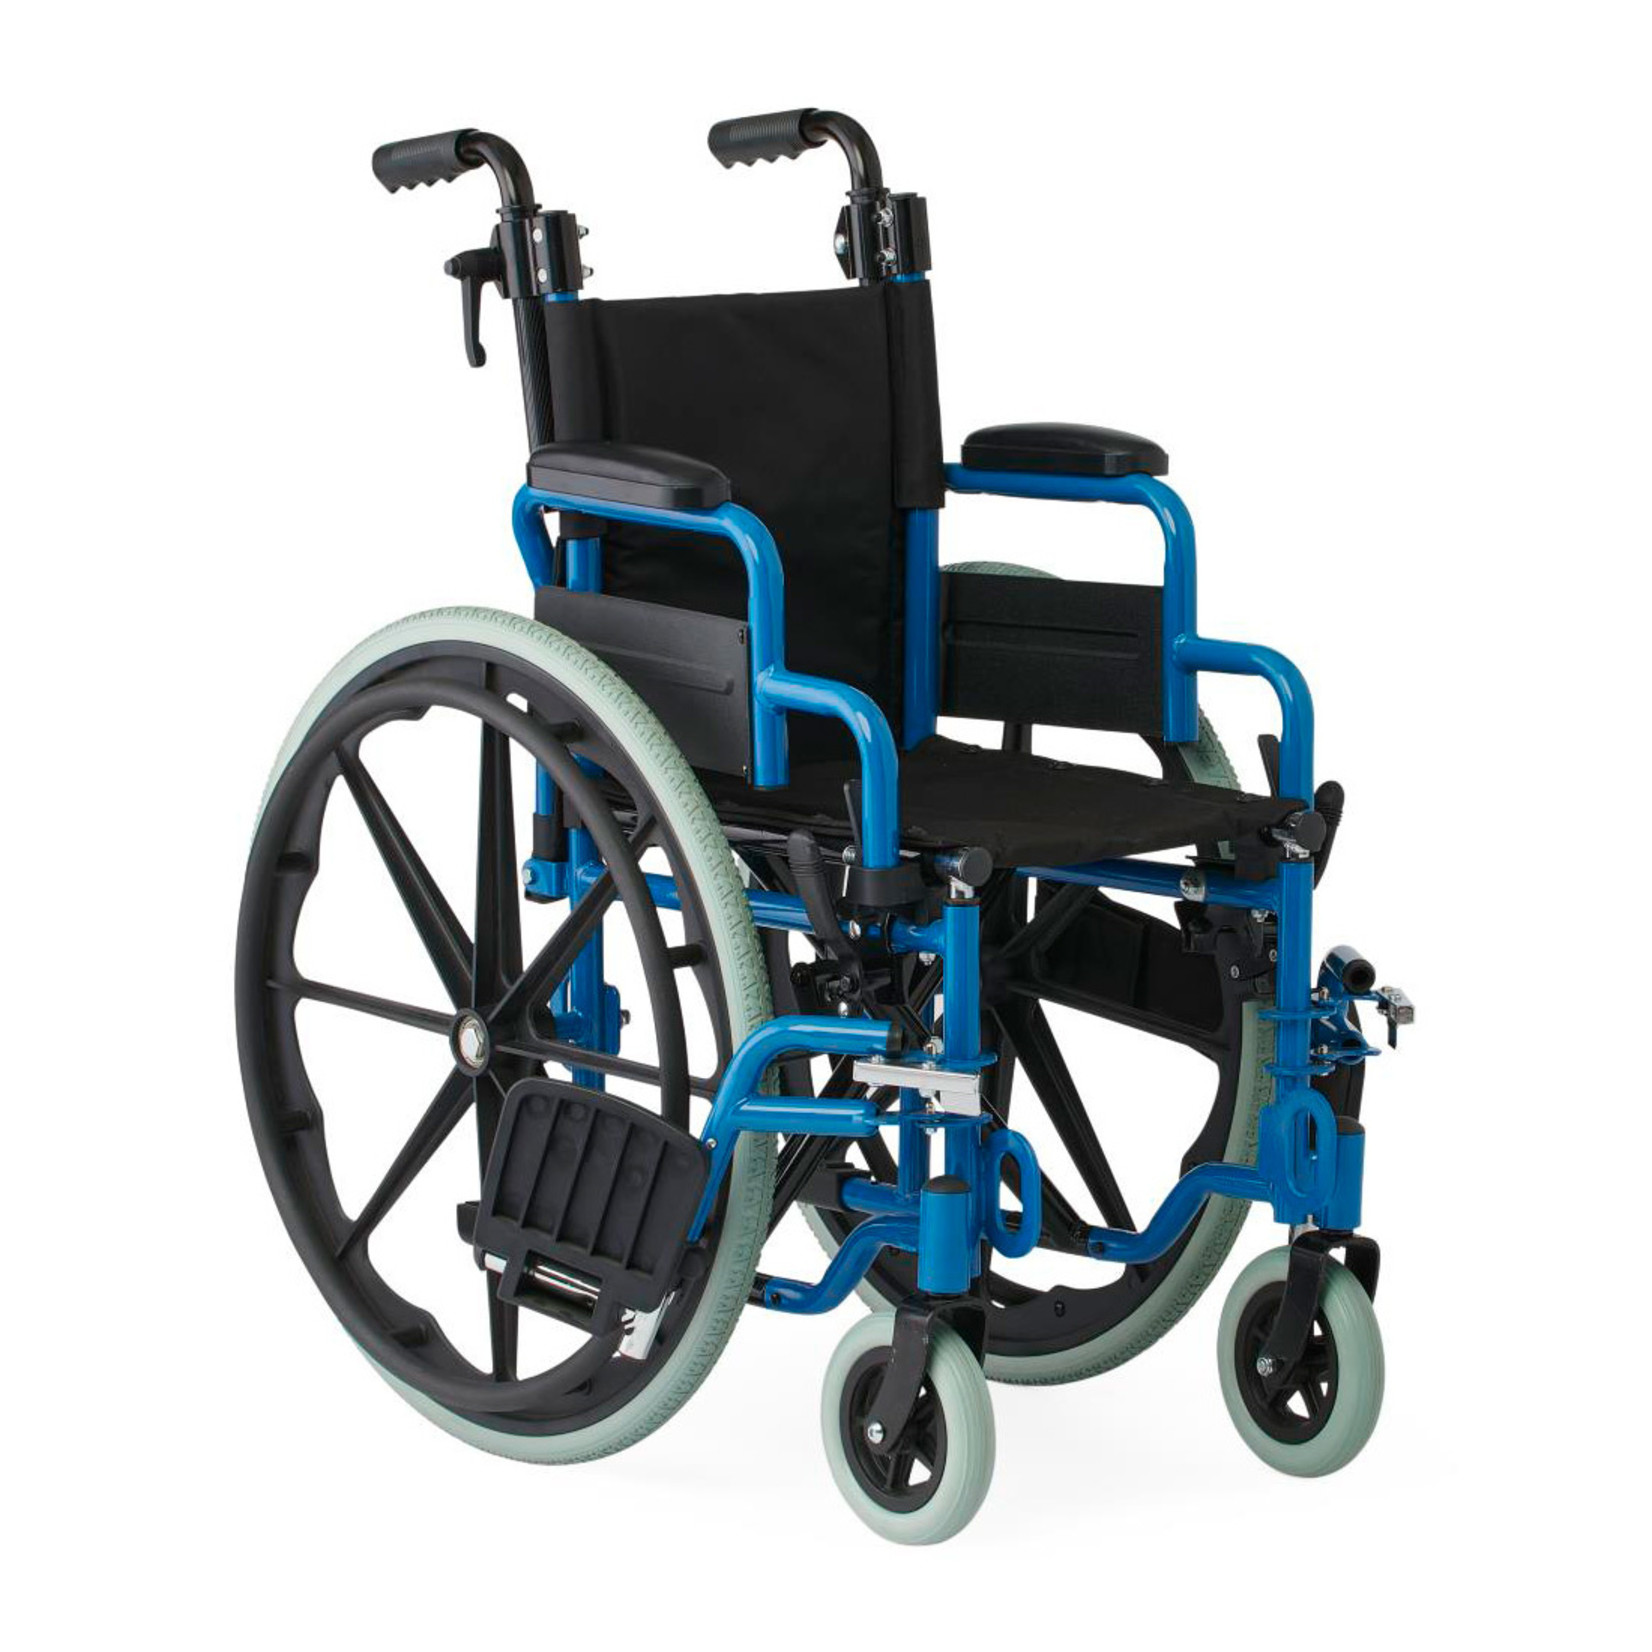 Medline Kidz Pediatric Wheelchair Blue 12 inch seat